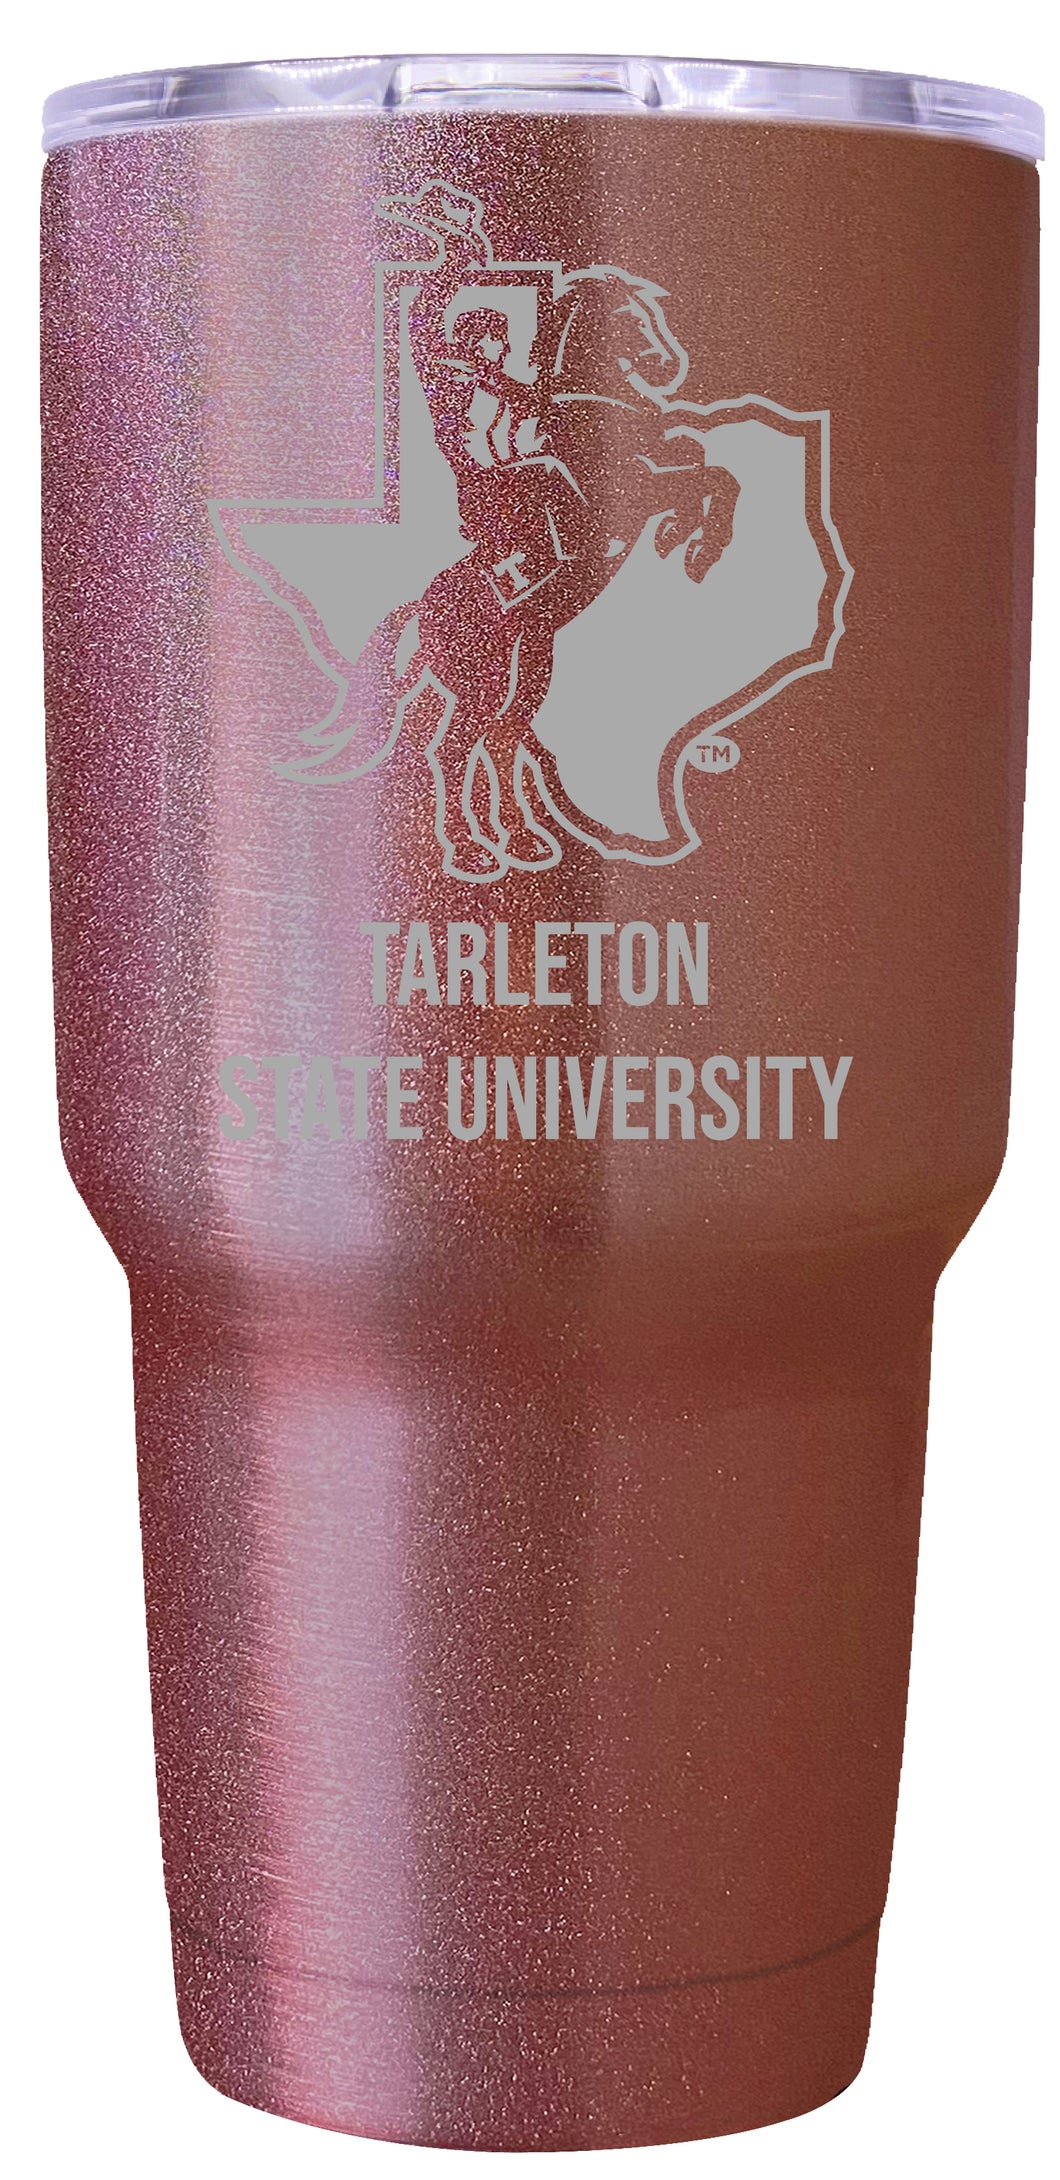 Tarleton State University Premium Laser Engraved Tumbler - 24oz Stainless Steel Insulated Mug Rose Gold